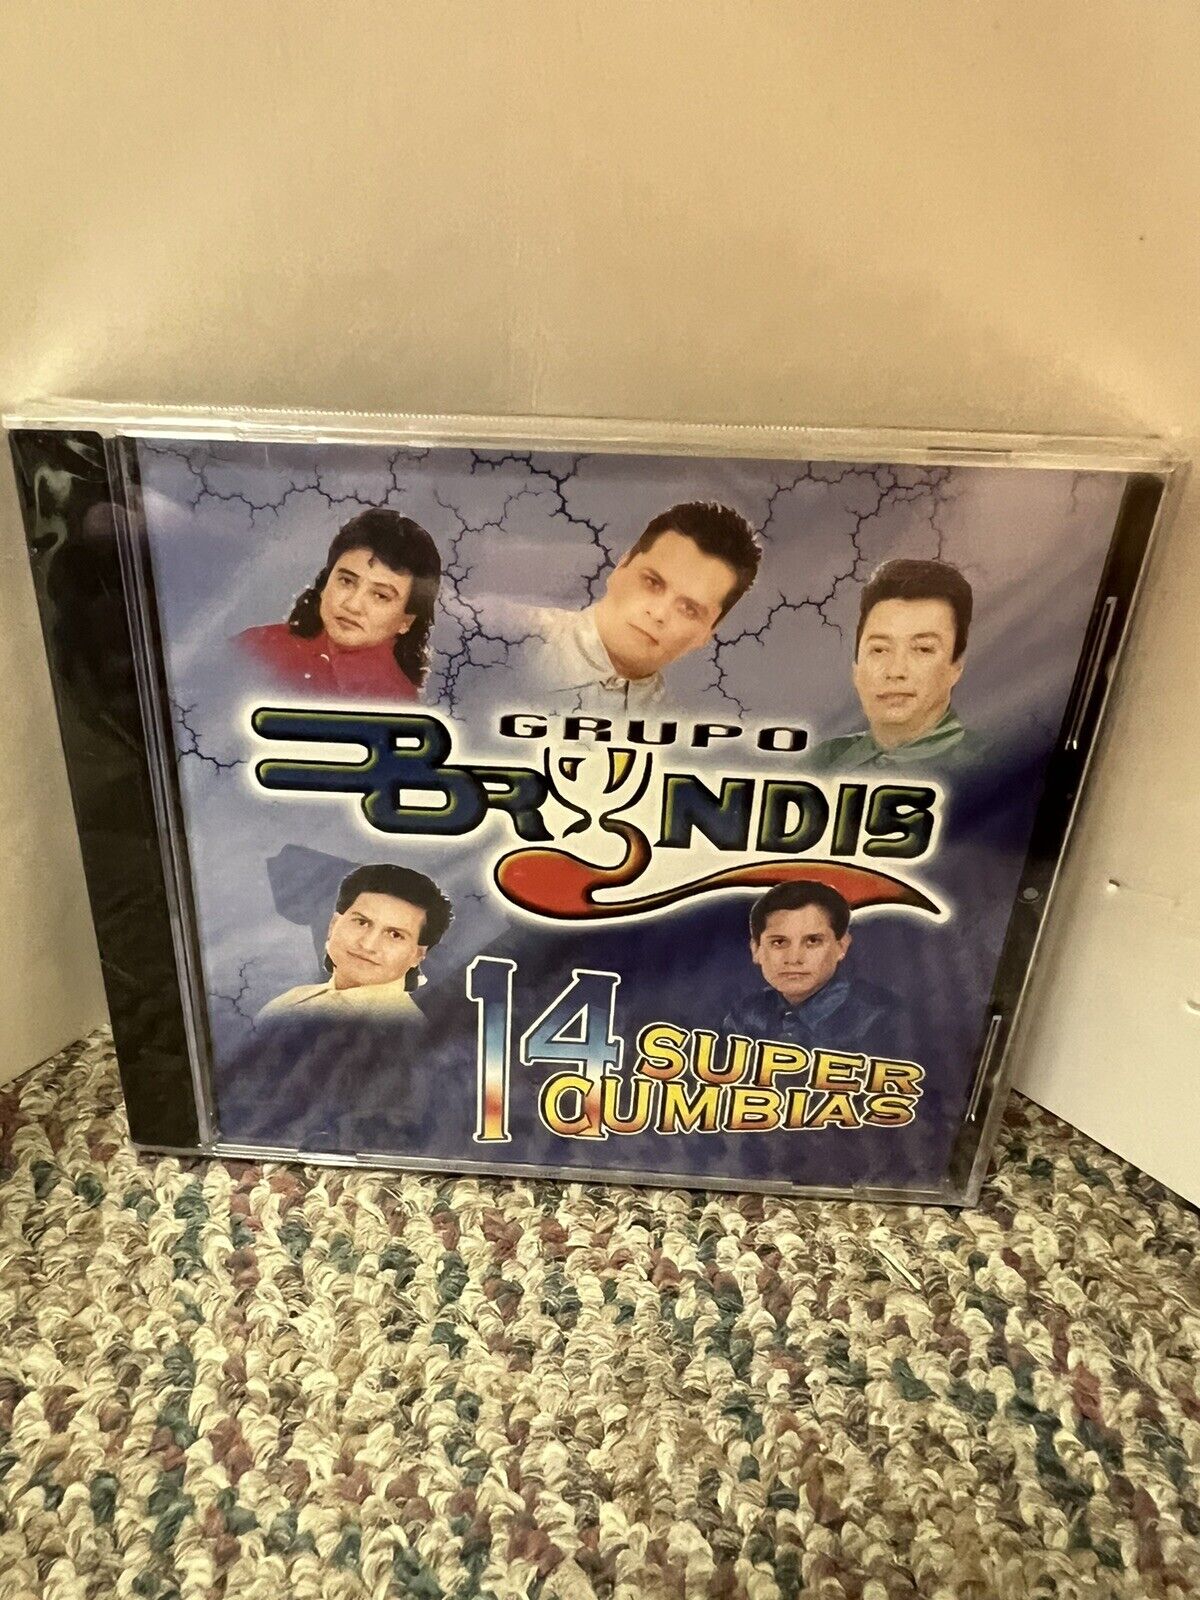 Grupo Brandis 14 Super Cumbias CD new/sealed (cracked case)